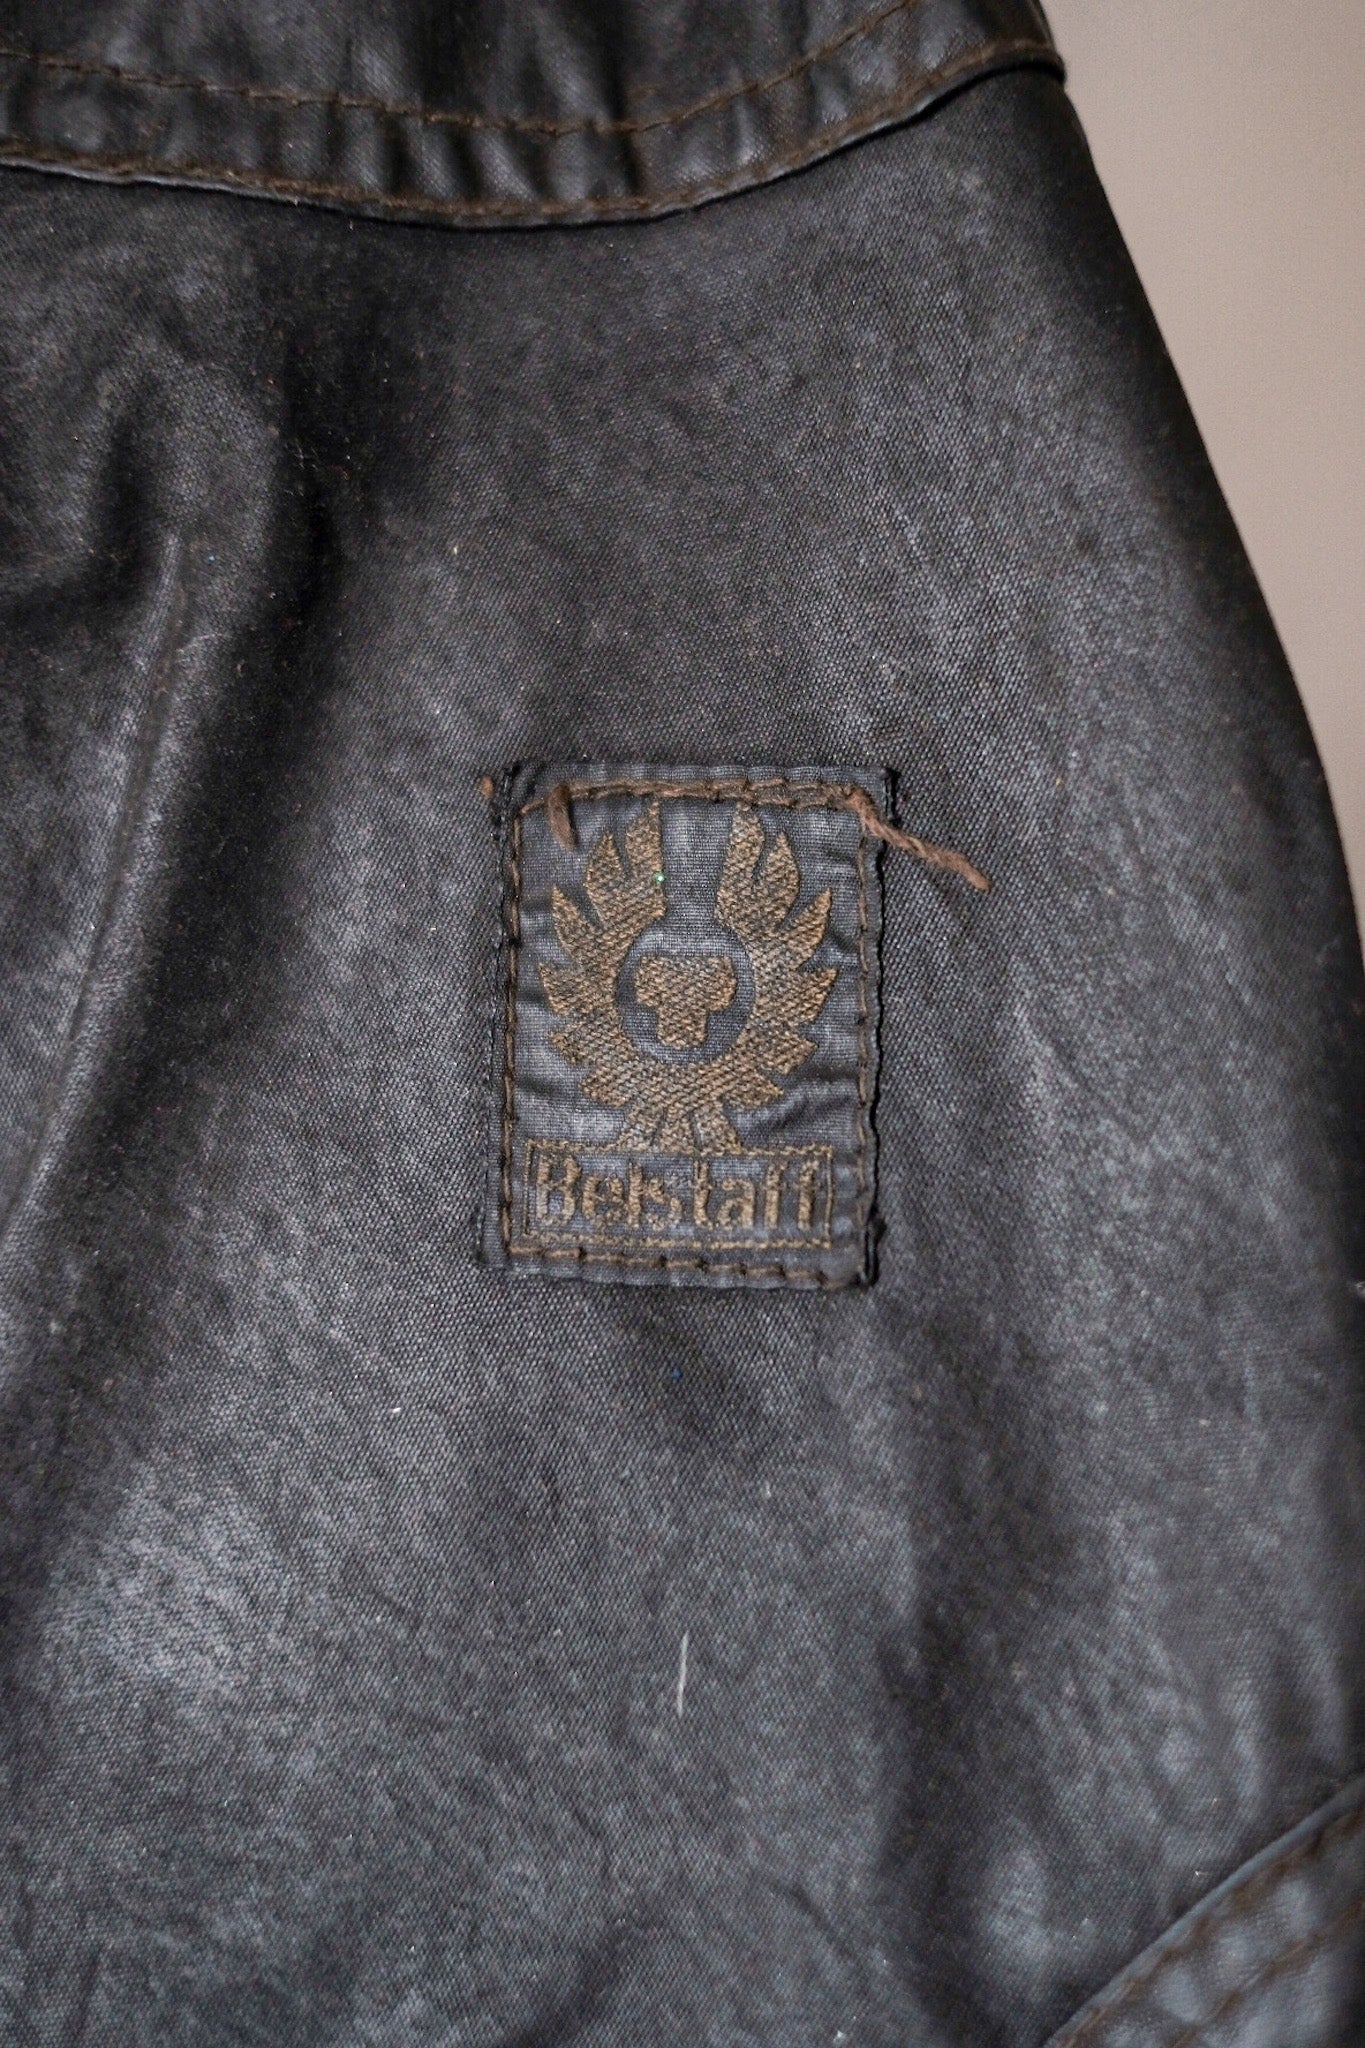 [~ 60 년대] Vintage Belstaff Waxed Jacket "Trialmaster"